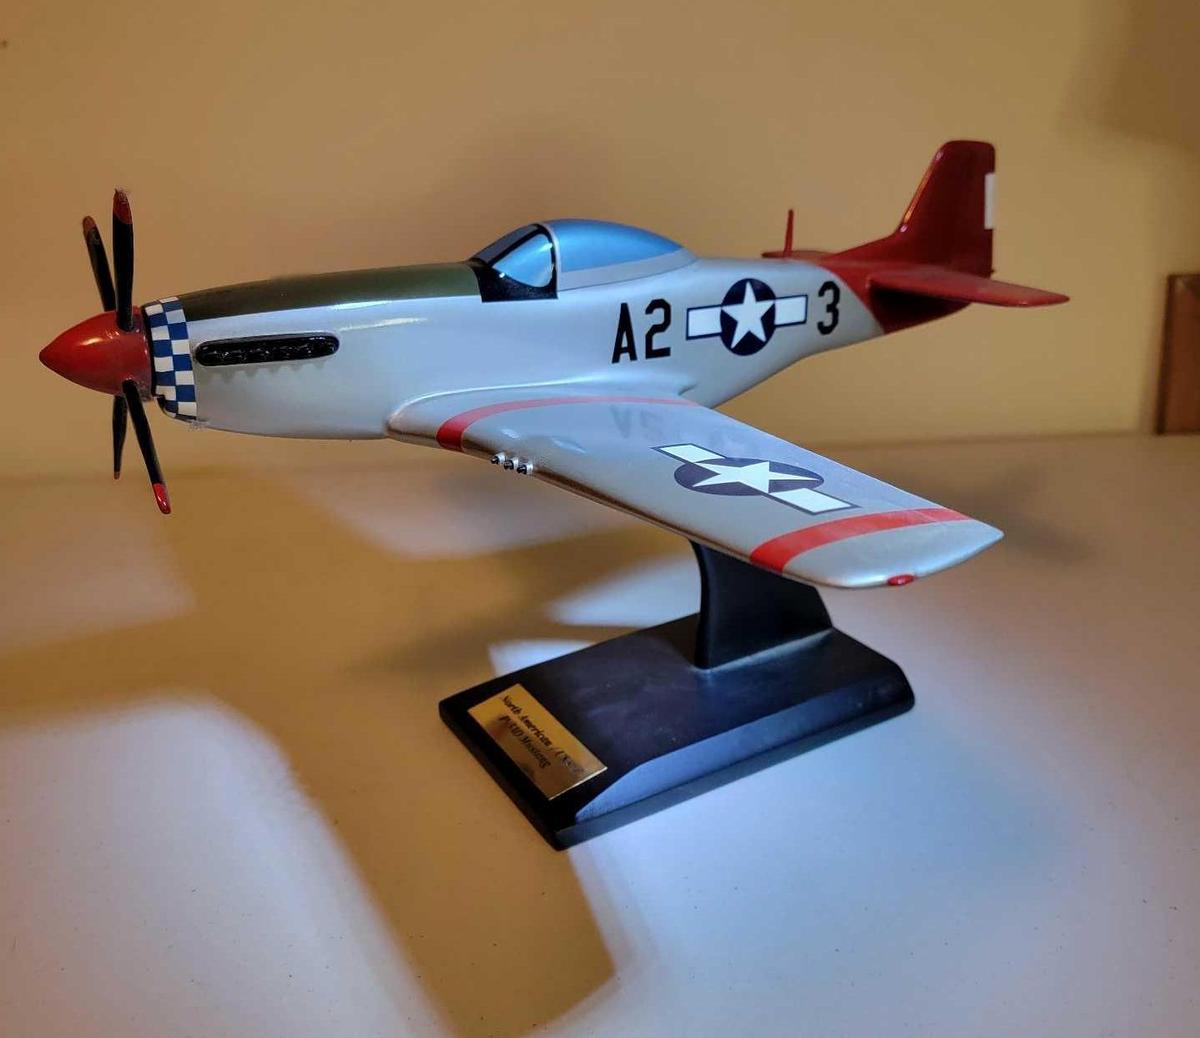 NORTH AMERICAN SAAF P-51D AIRCRAFT MODEL